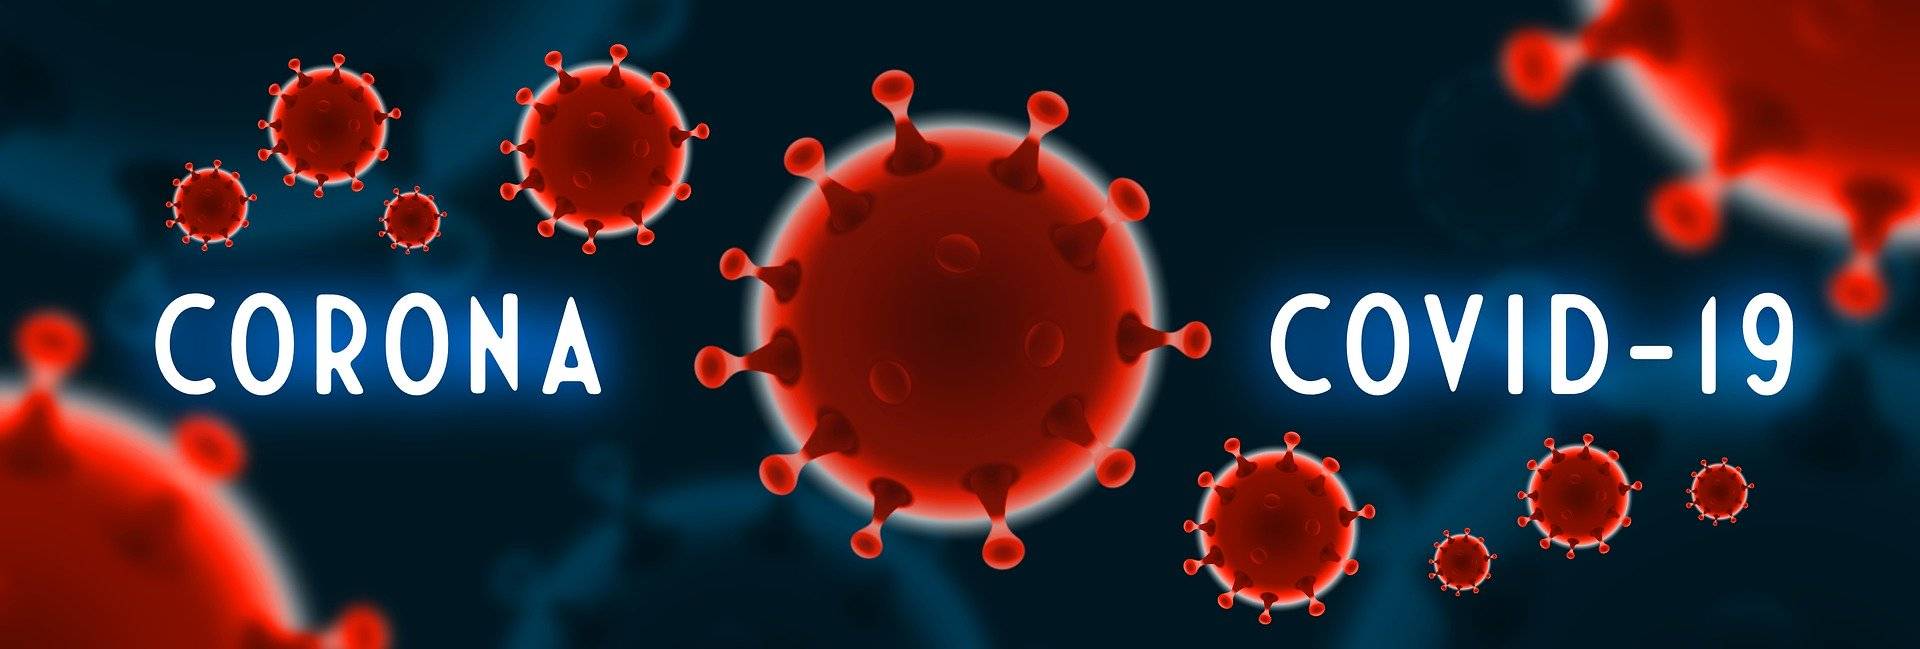 Corona-Virus: Zwischenbilanz Corona-Praxen und Probeentnahmestellen